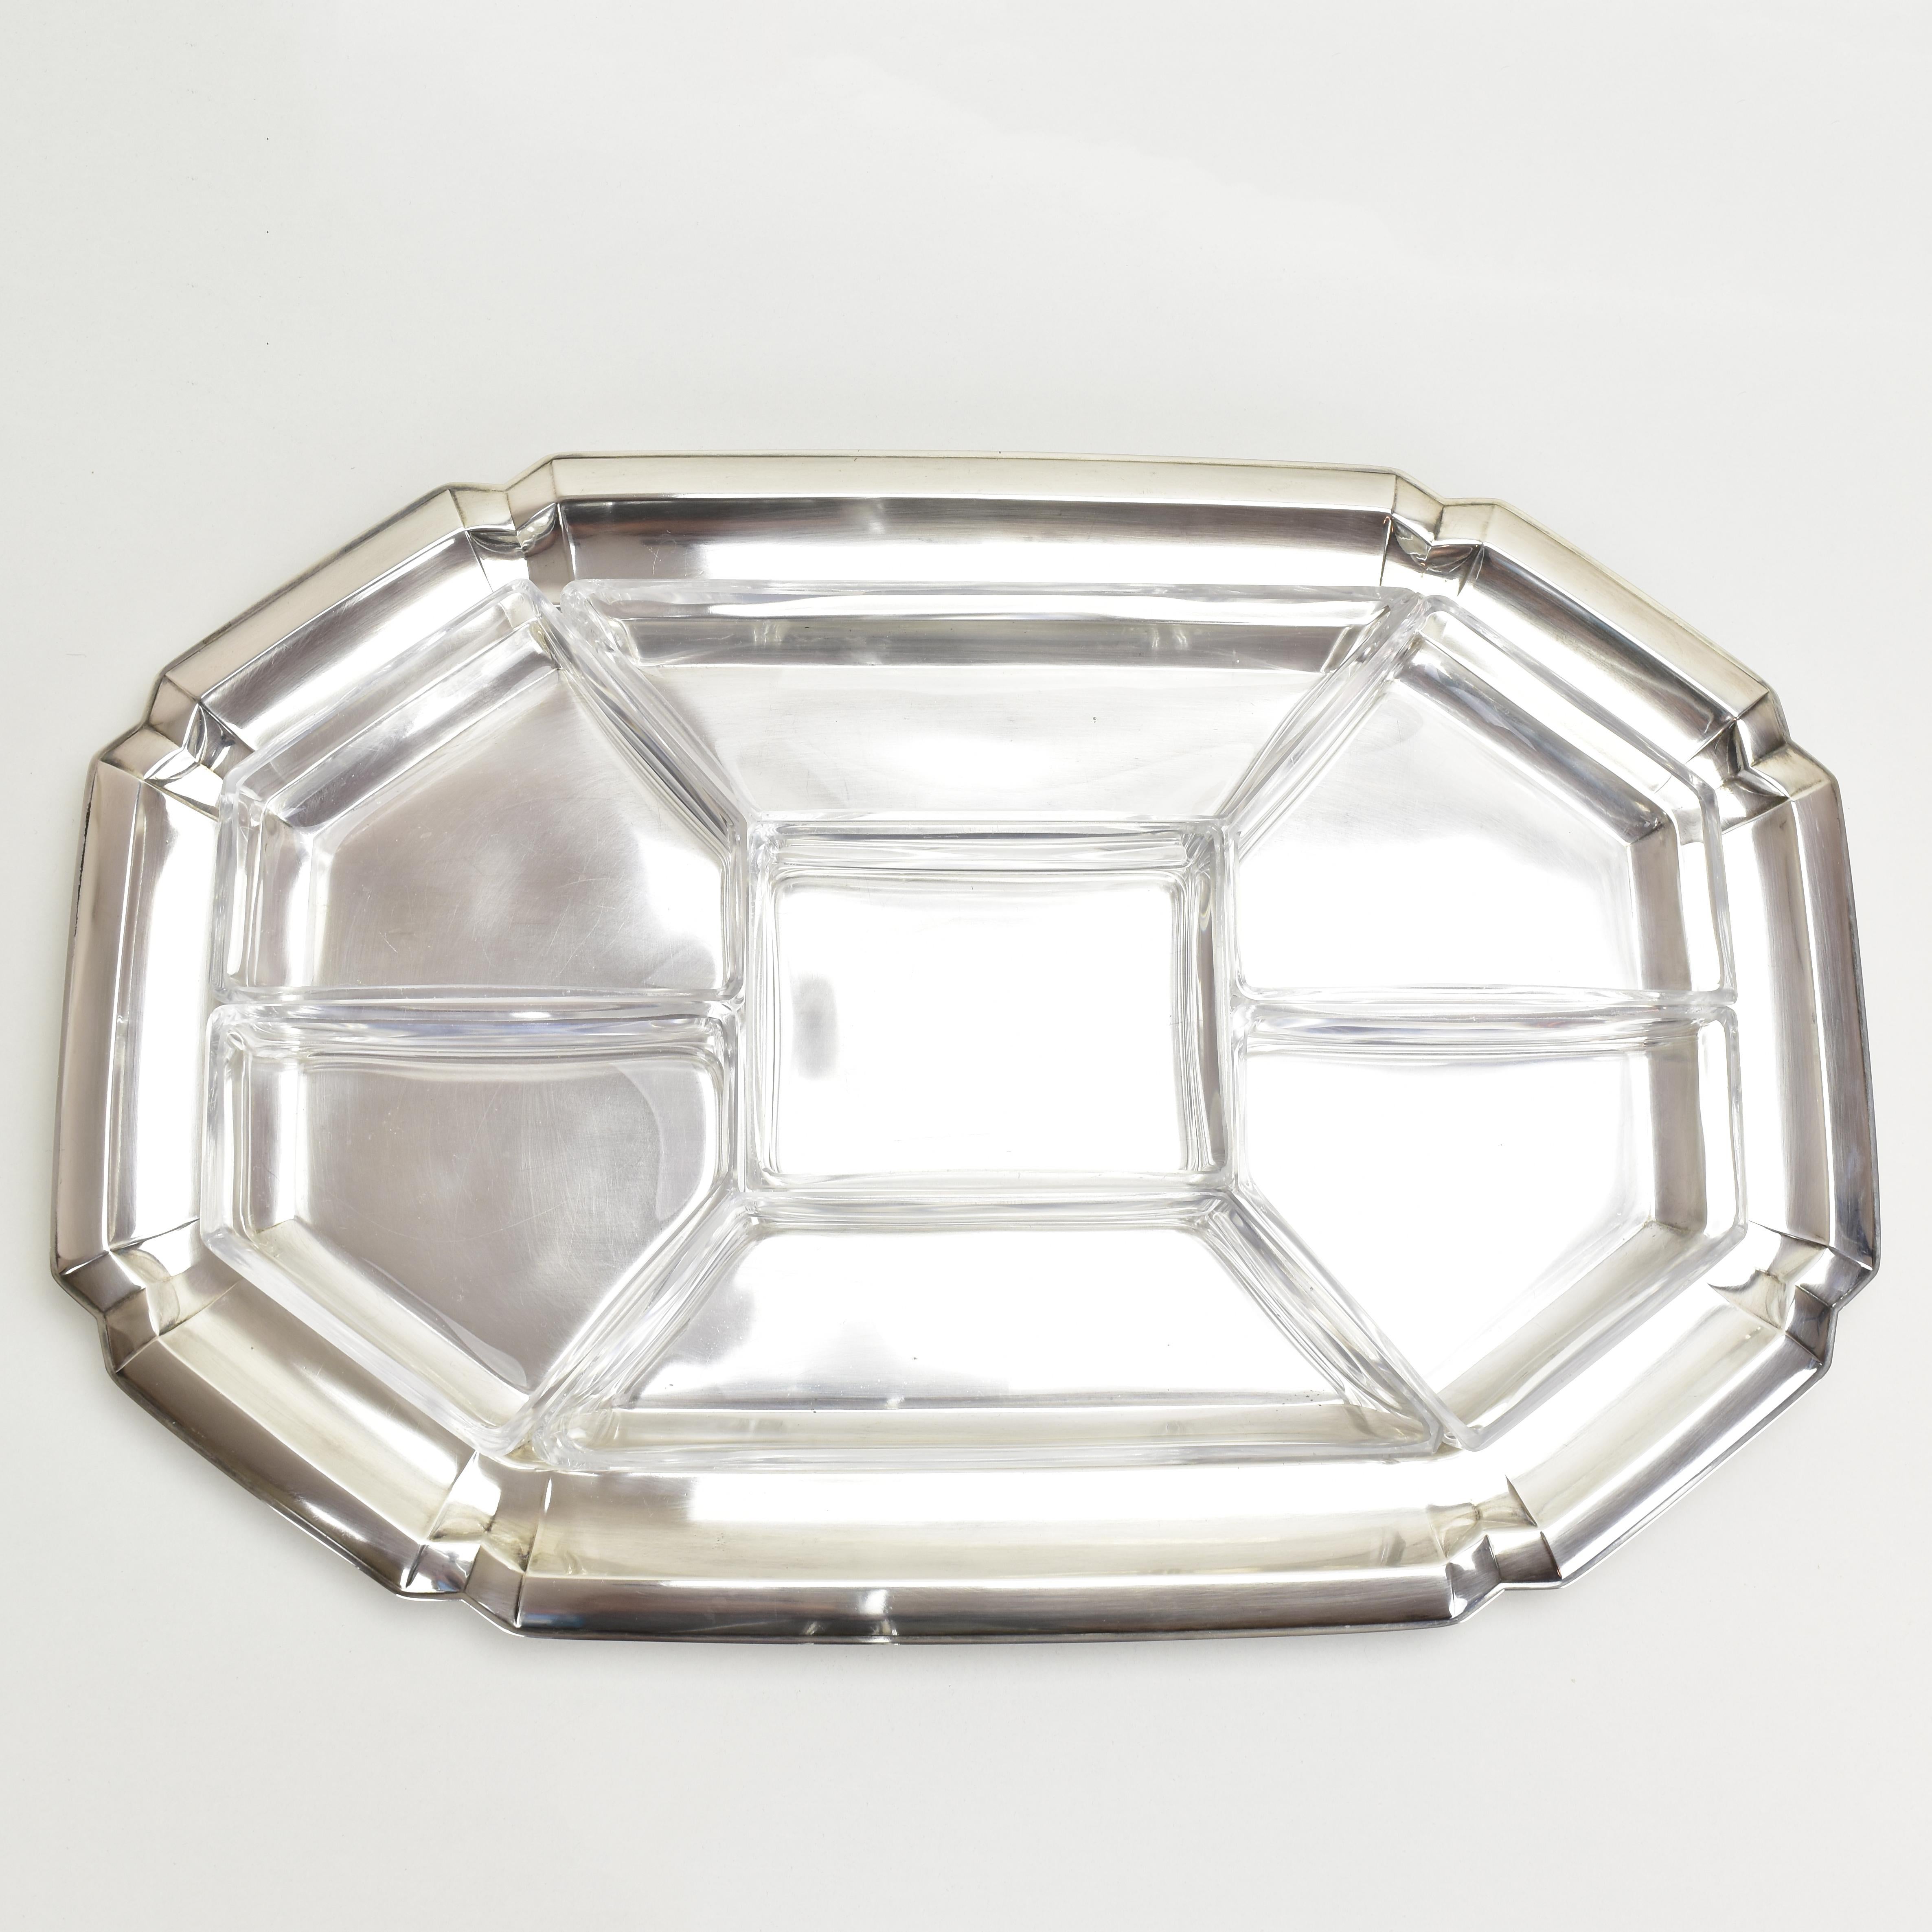 Dieses atemberaubende Art-Déco-Snack-Tablett ist eine schöne Ergänzung für jede Cocktailparty. Das Tablett ist aus versilbertem Messing gefertigt und trägt sieben originale Schalen aus geschliffenem Kristall.
Das Set ist in sehr gutem Zustand ohne